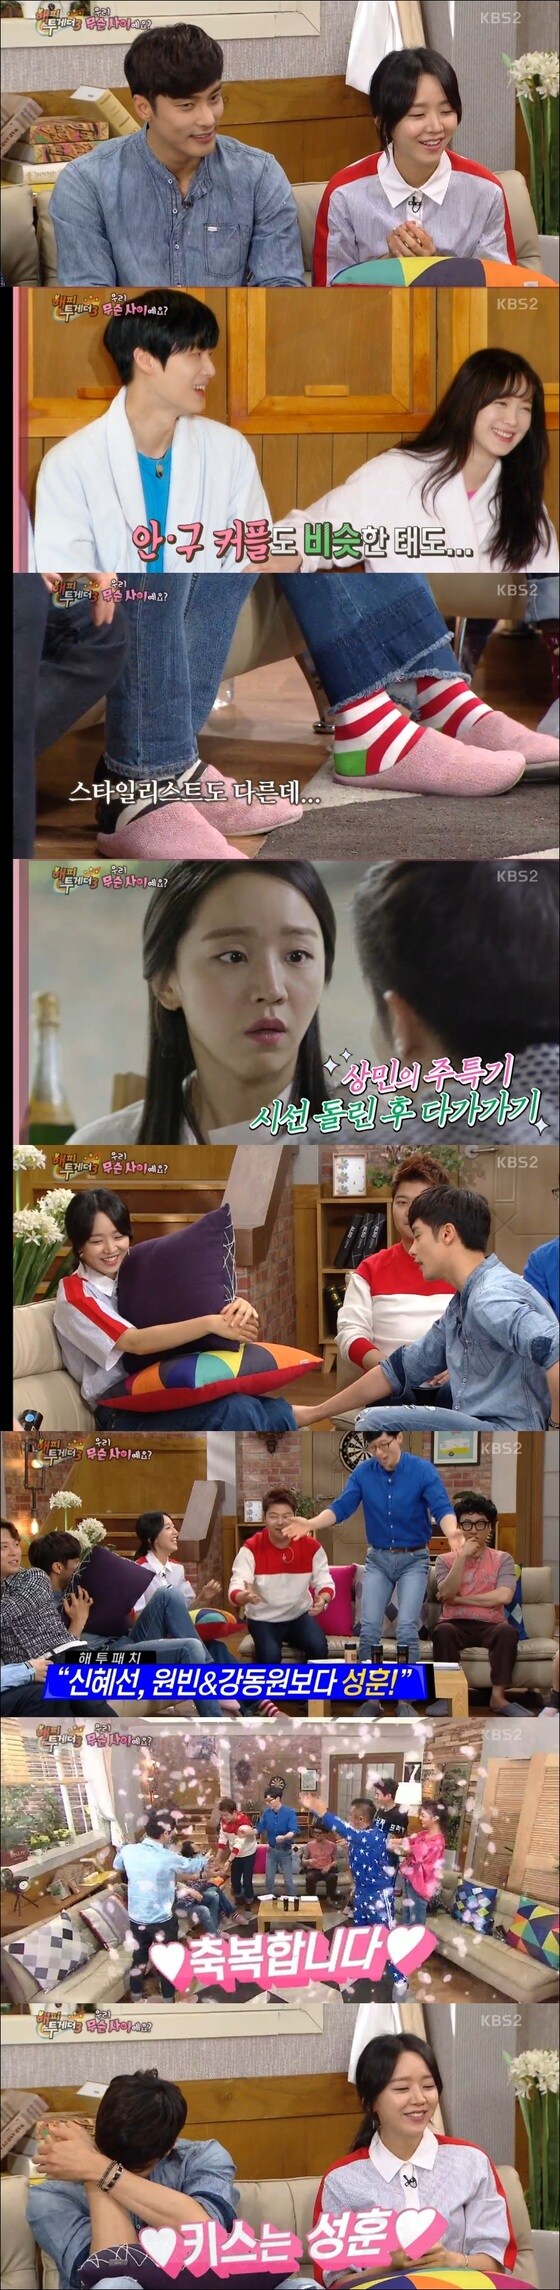 신혜선(오른쪽), 성훈이 서로에게 설렌 순간을 떠올렸다. © News1star / KBS2 '해피투게더3' 캡처